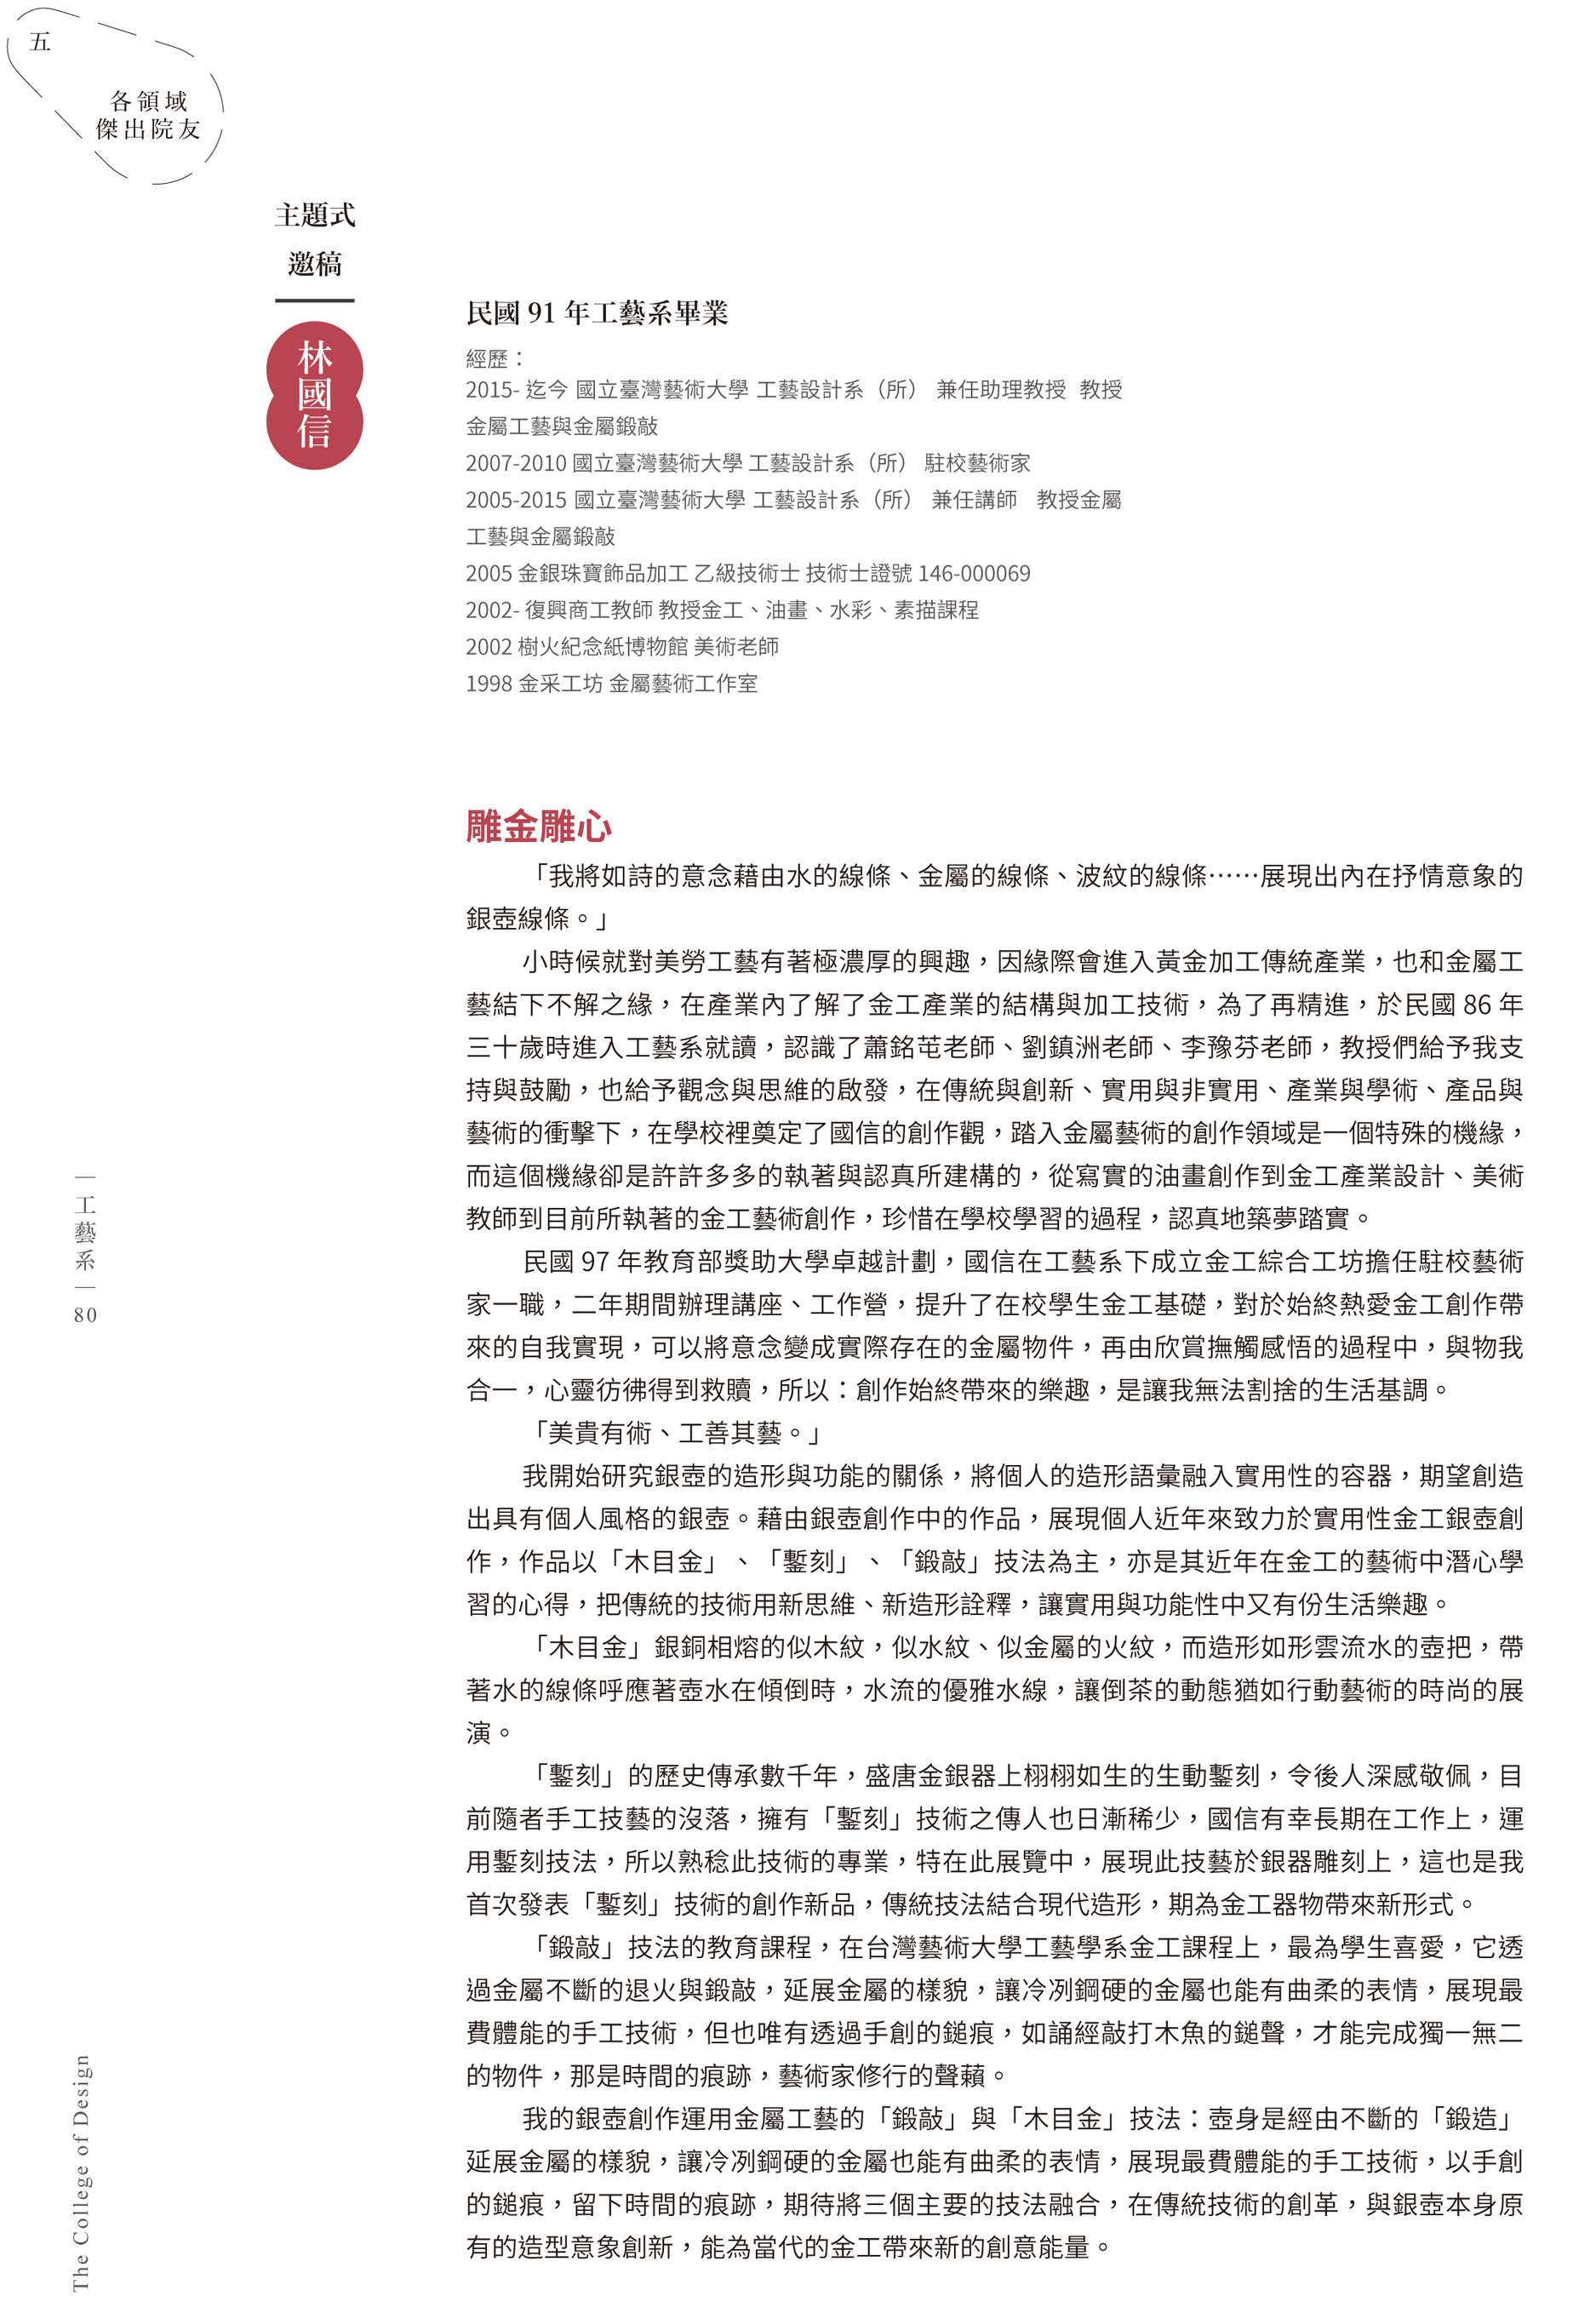 台灣藝術大學六十週年專刊報導